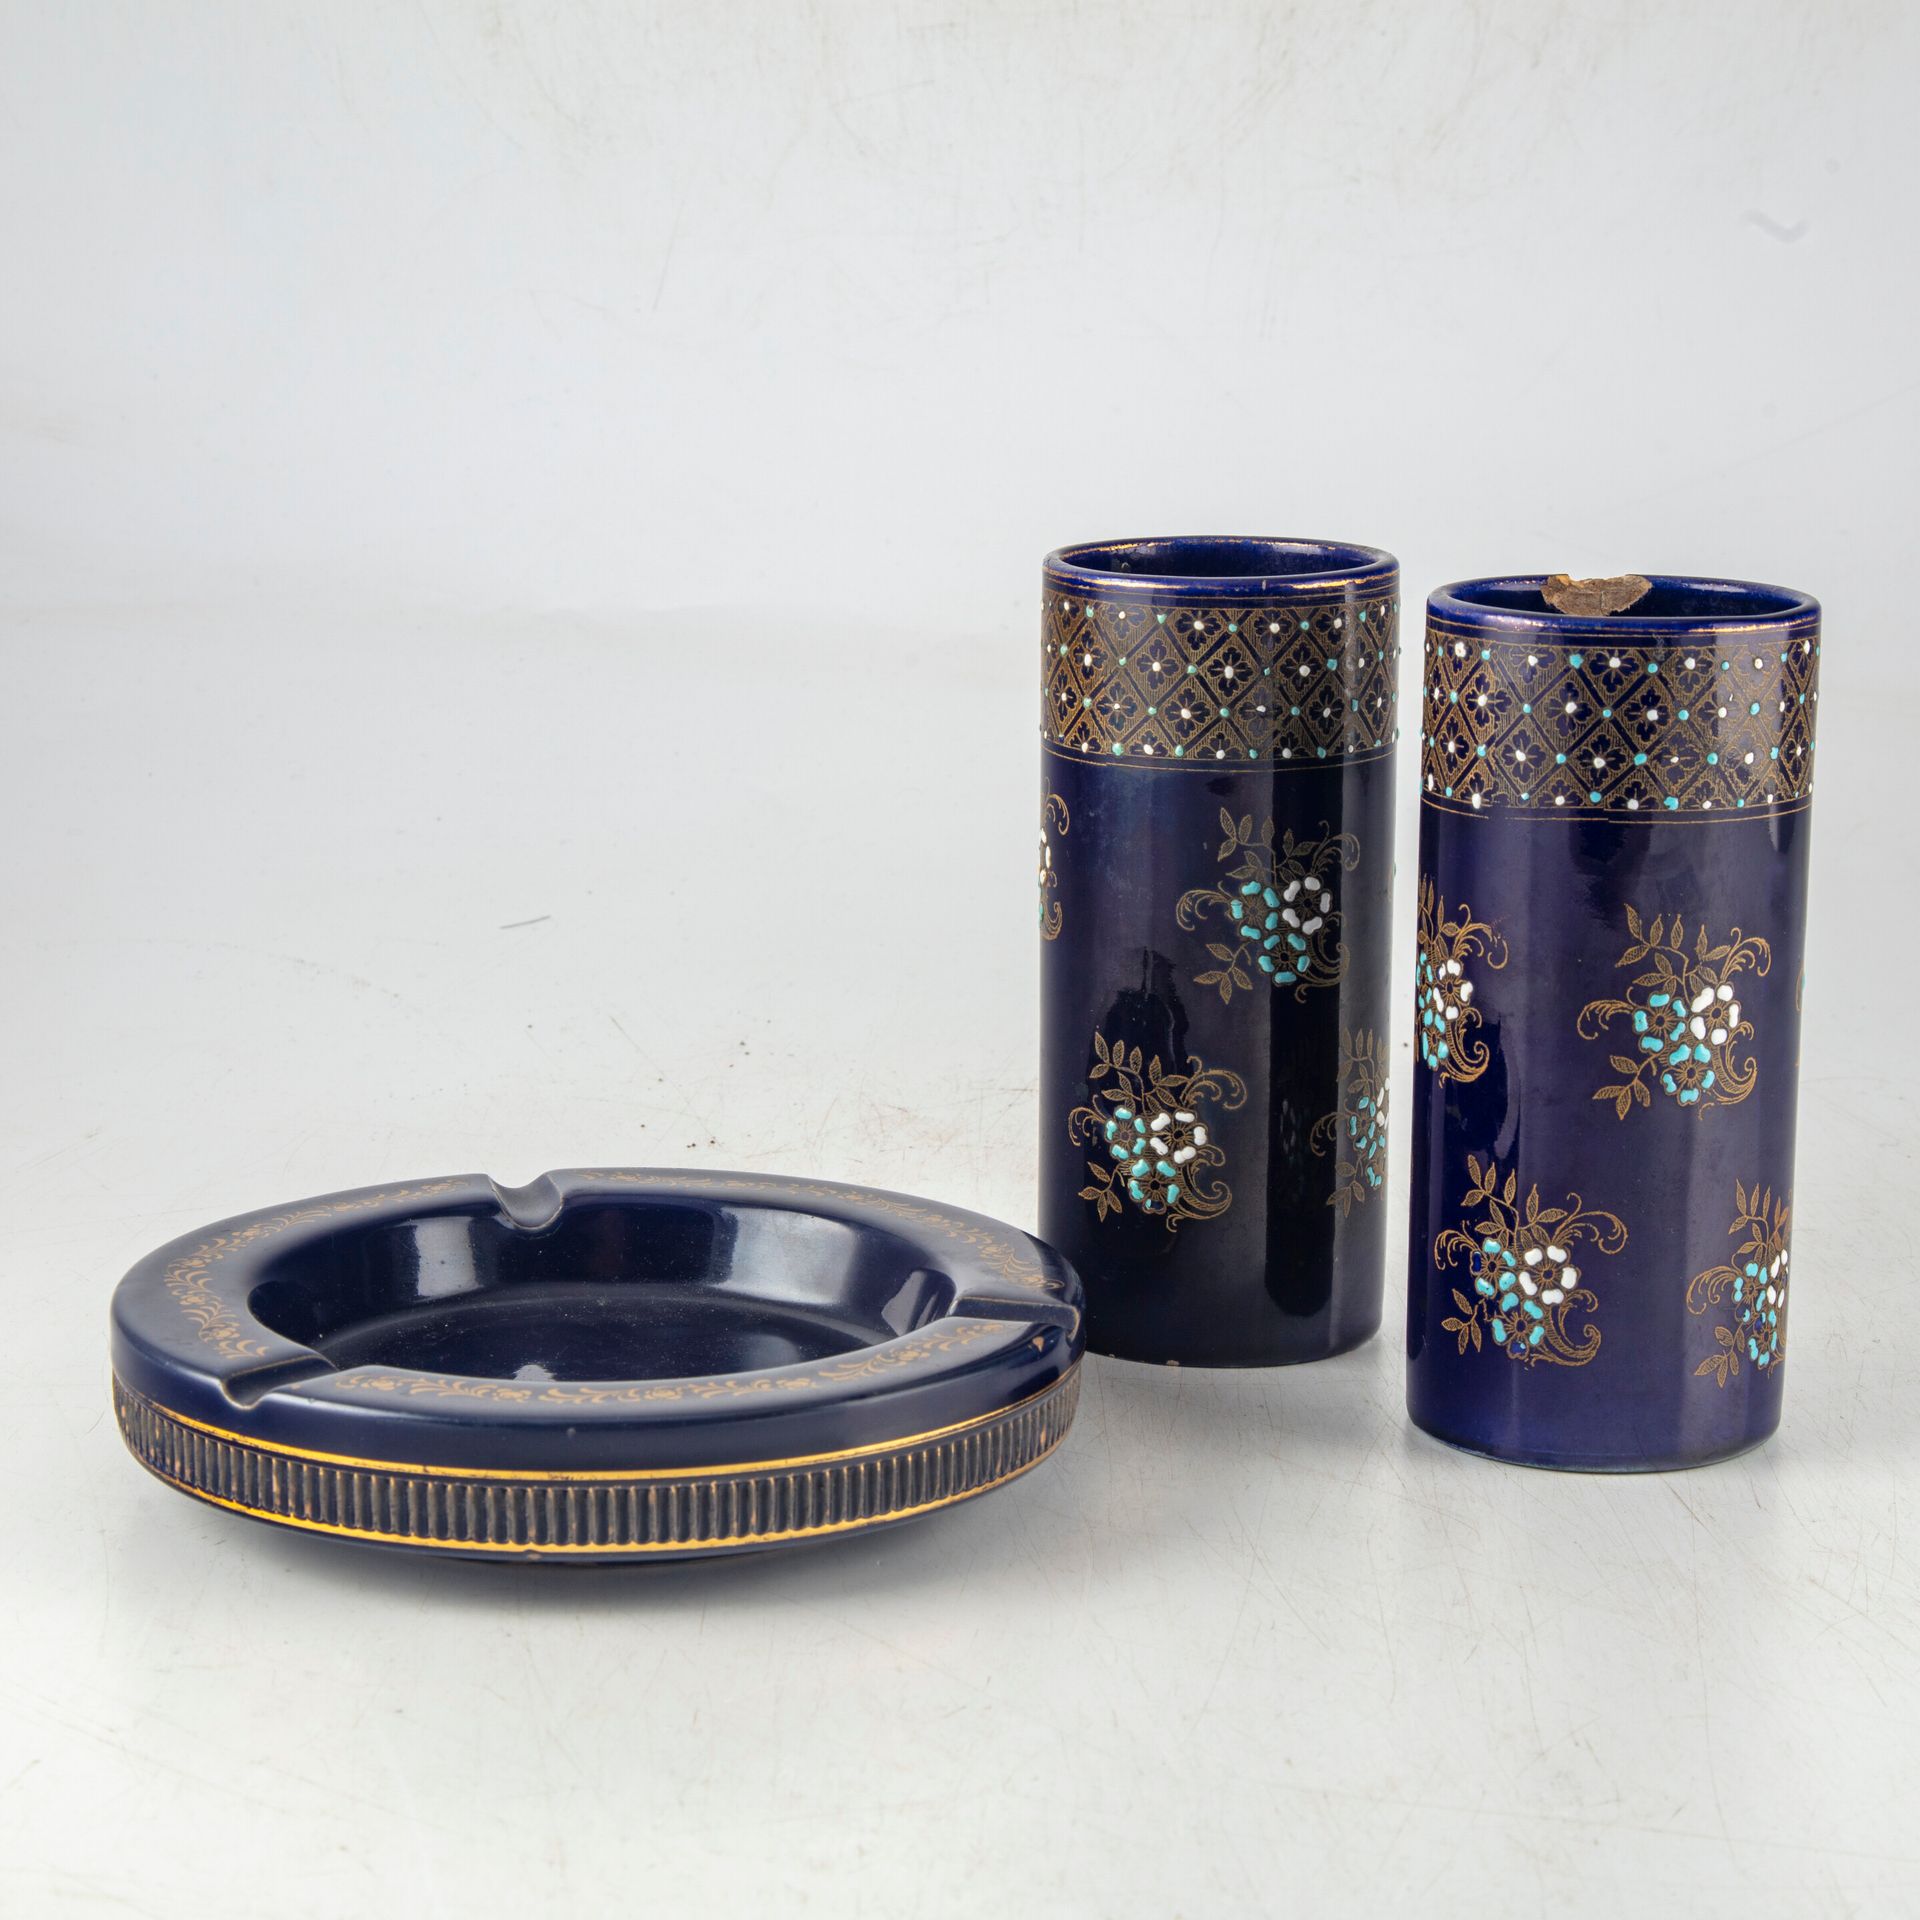 Null 一对釉面陶器花瓶，上面绘有花朵。附有一个相同品味的釉面陶器烟灰缸 
高度：15厘米 
划痕